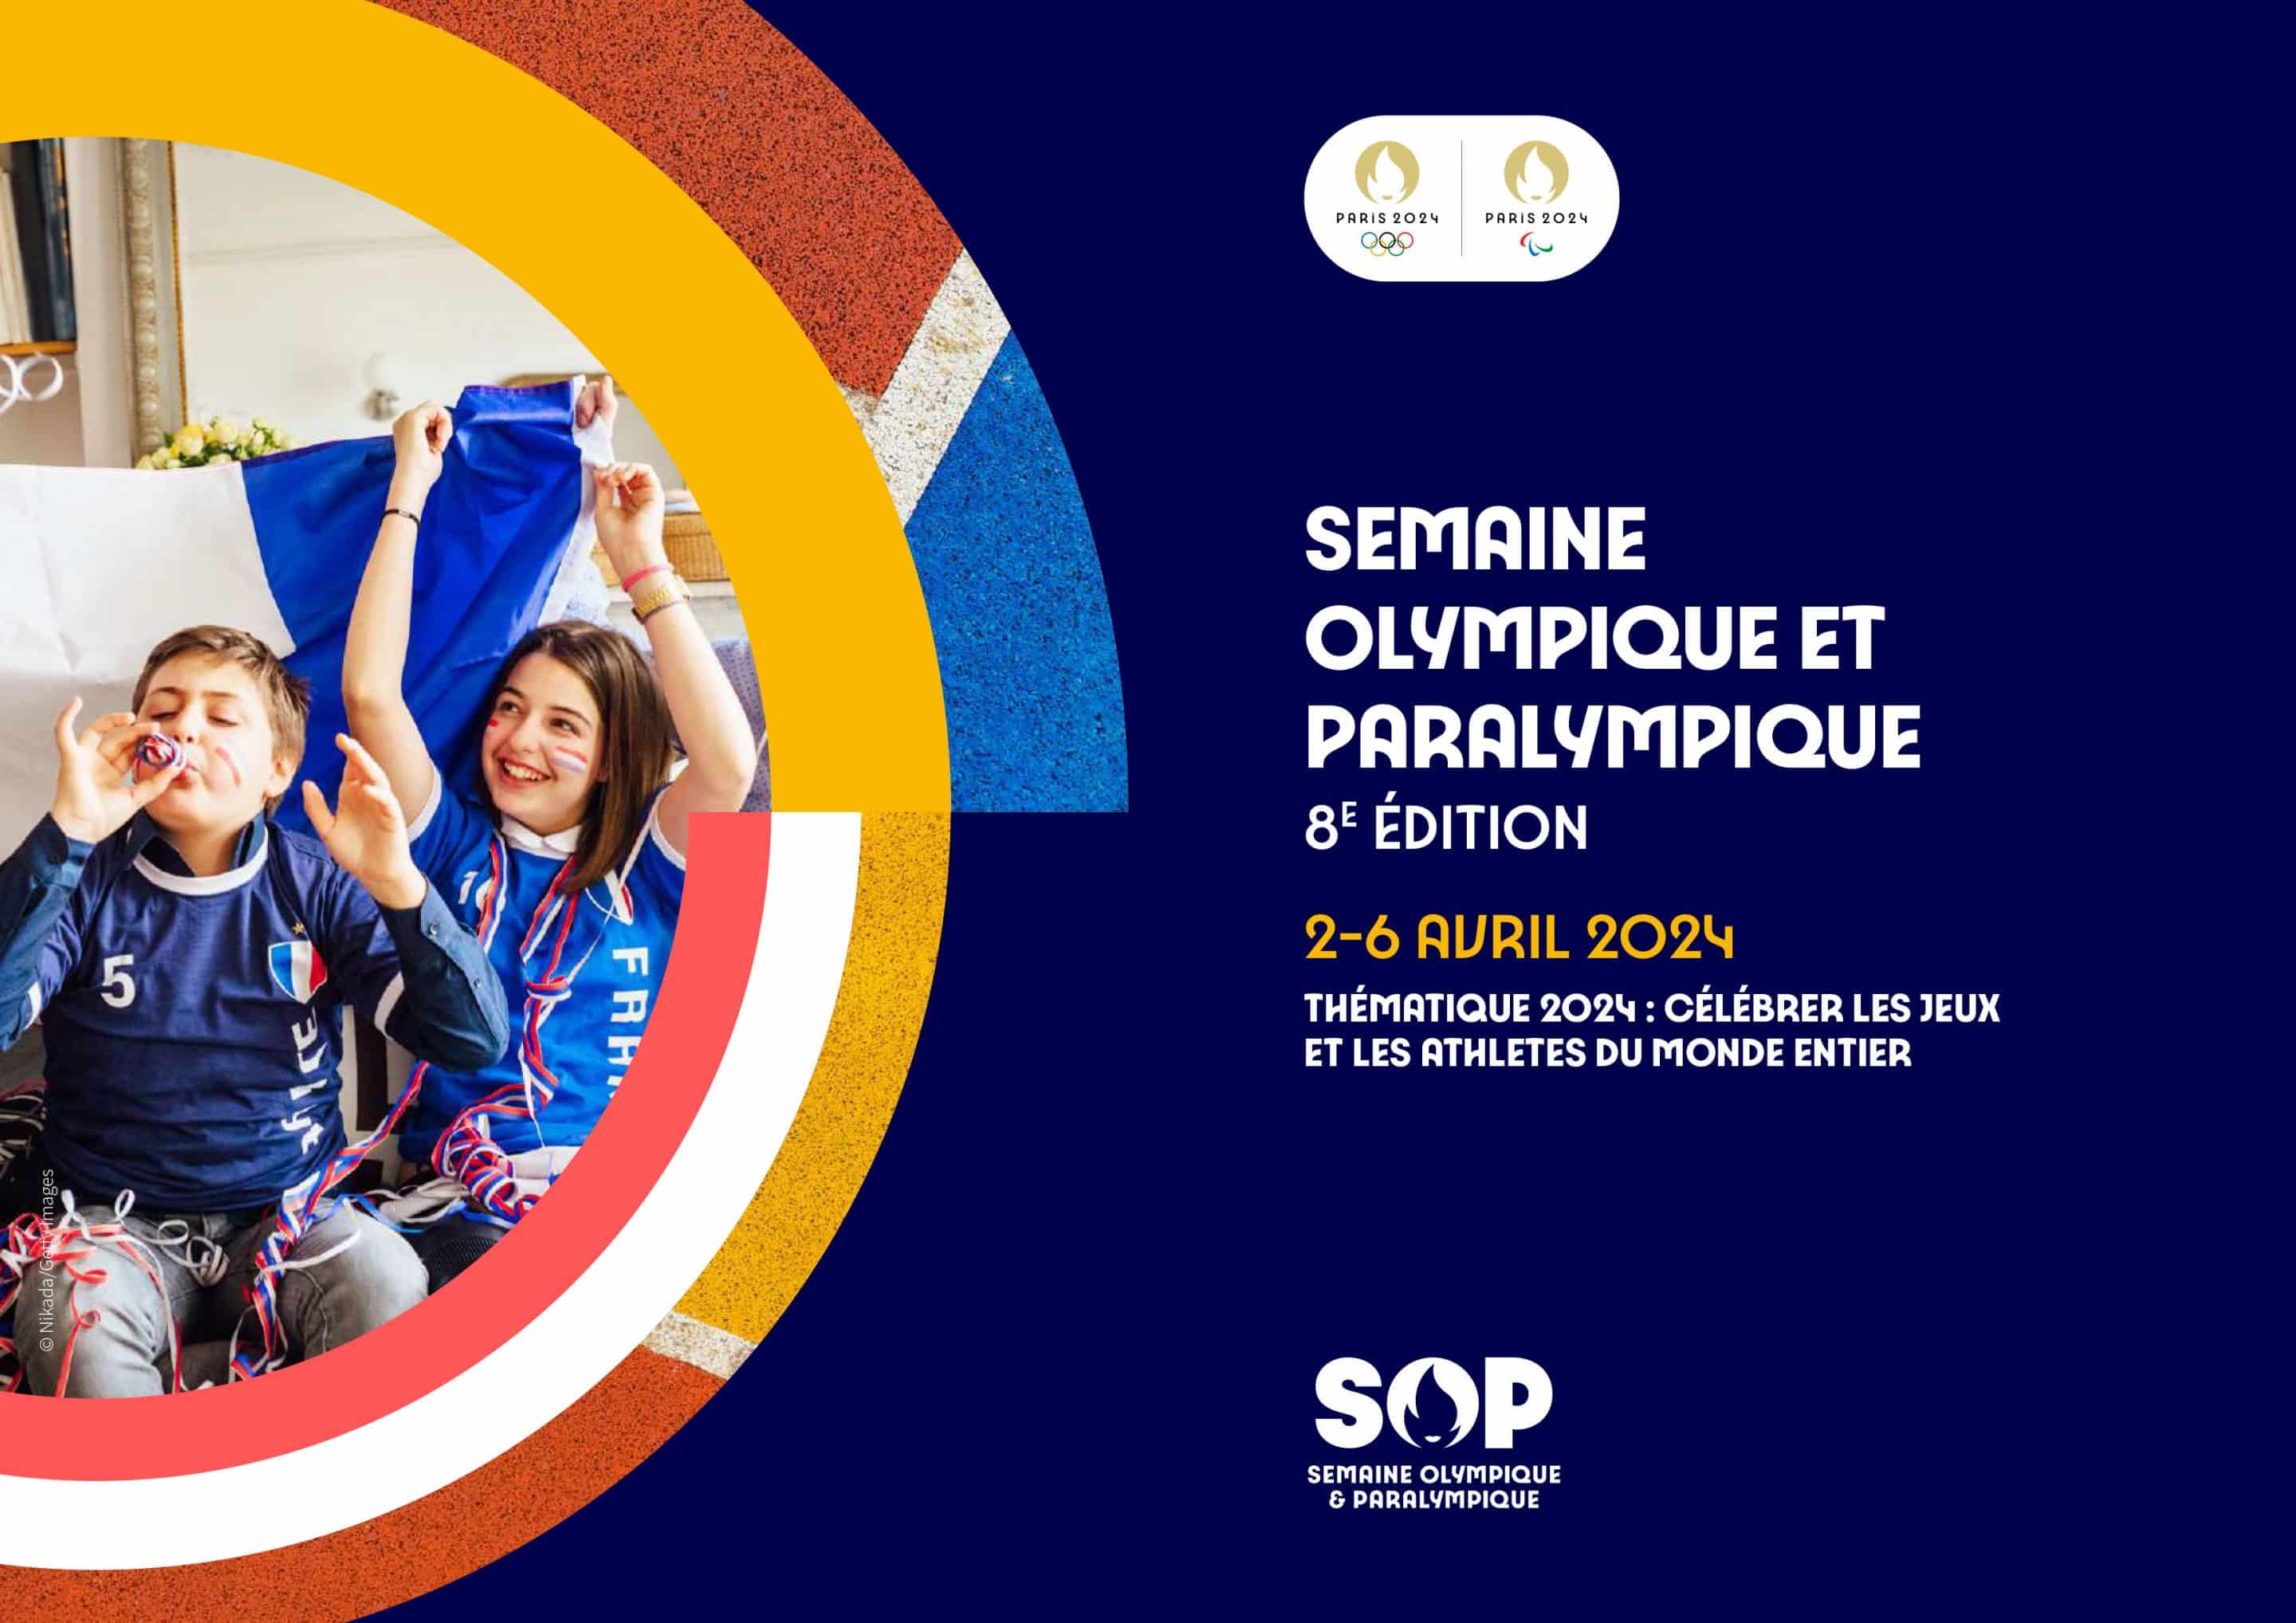 Semaine Olympique et Paralympique (SOP) 2024 – Inscriptions ouvertes